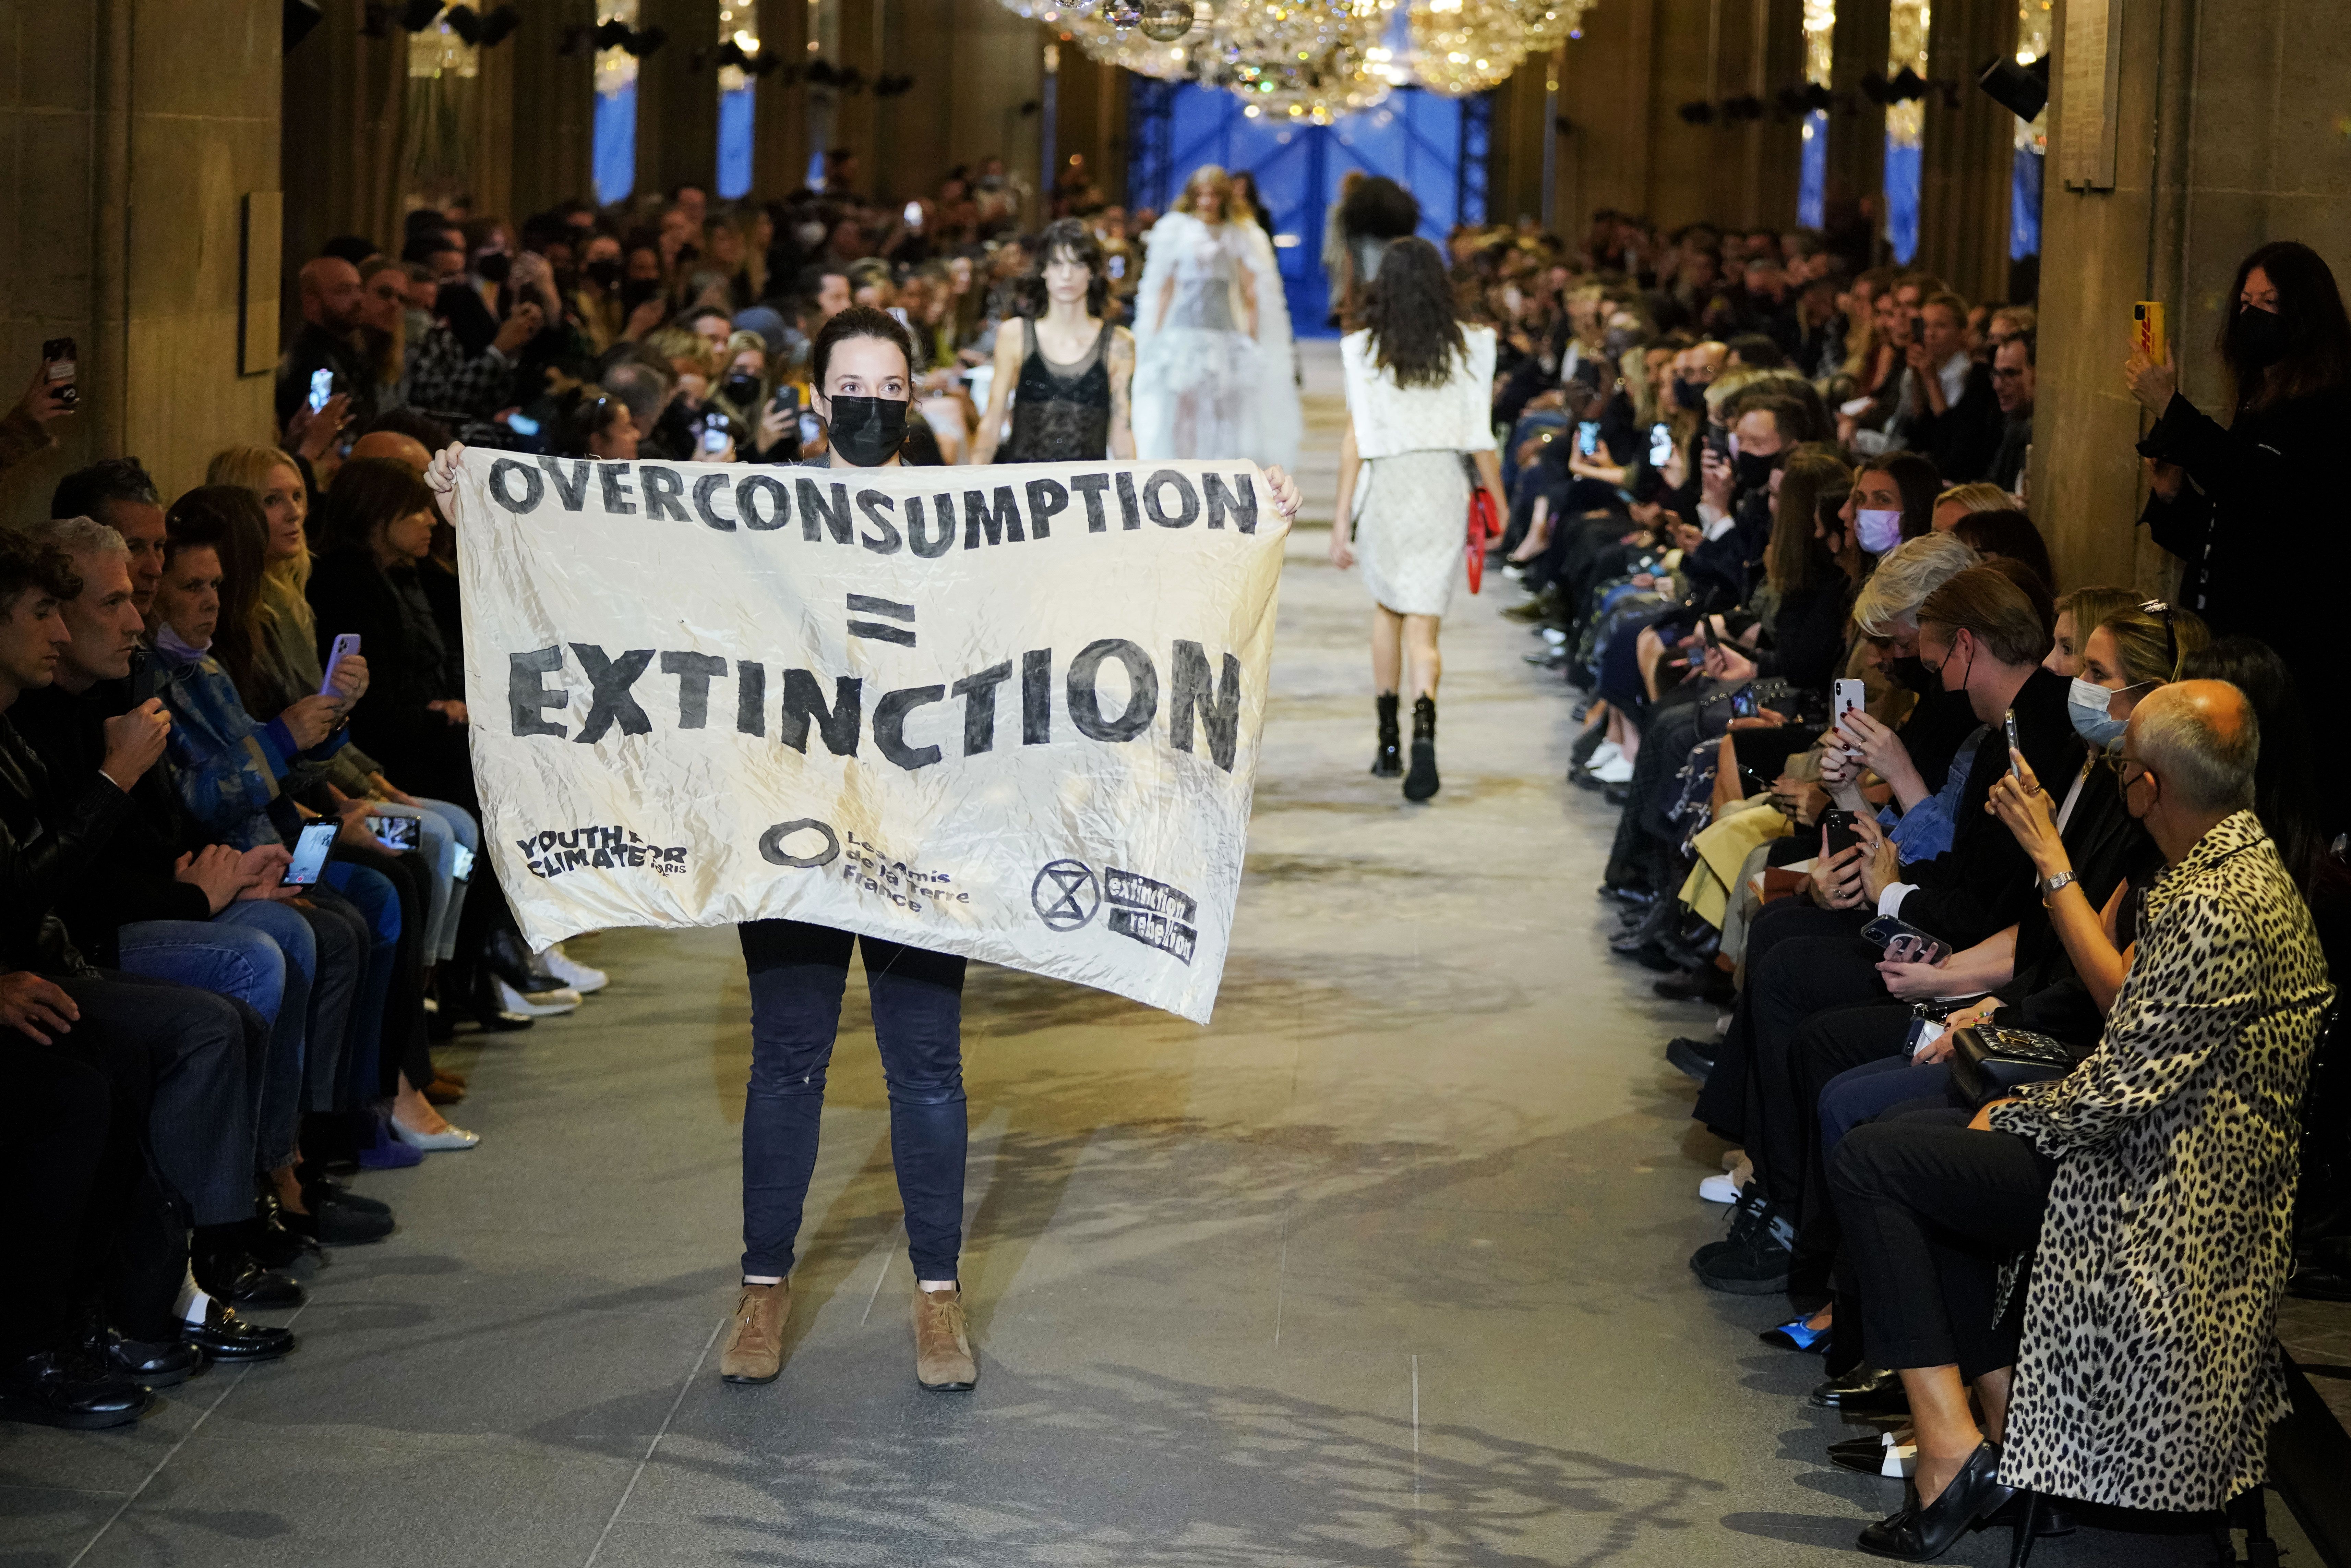 Louis Vuitton Is Renovating a Mammoth Site on Paris' Champs-Élysées – WWD